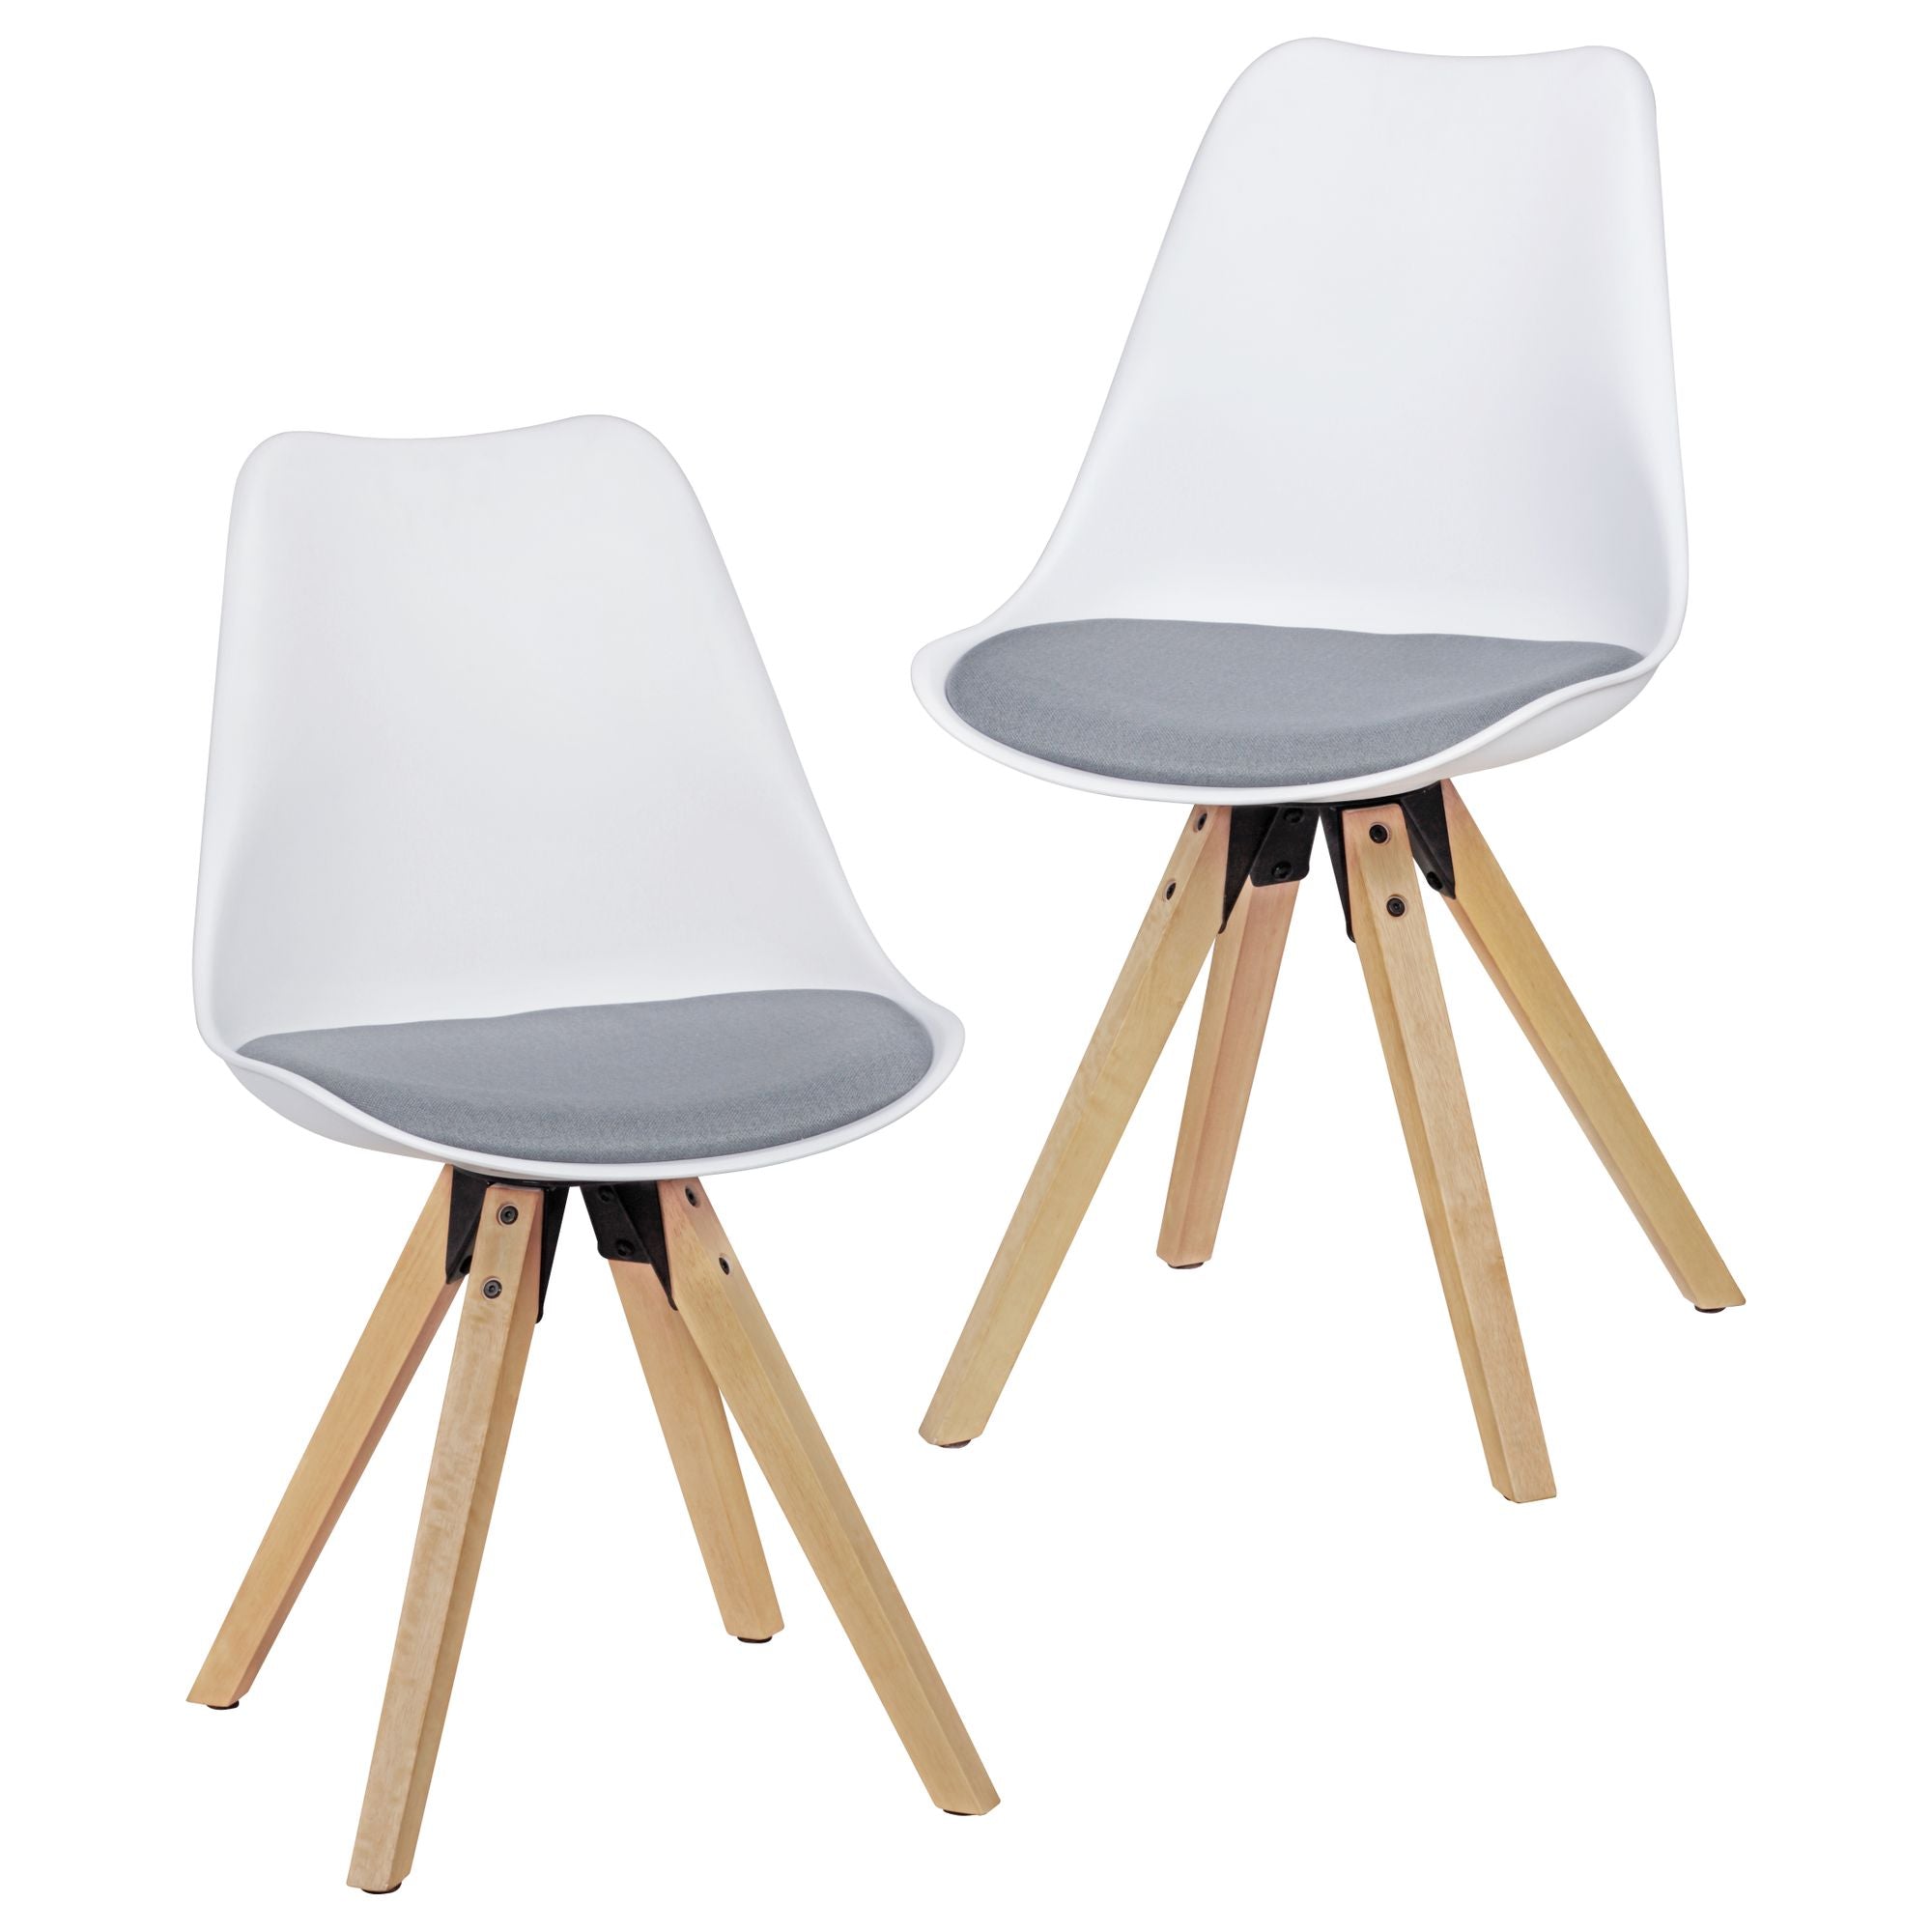 6: Sæt med 2 x retro spisebordsstole i hvid / grå